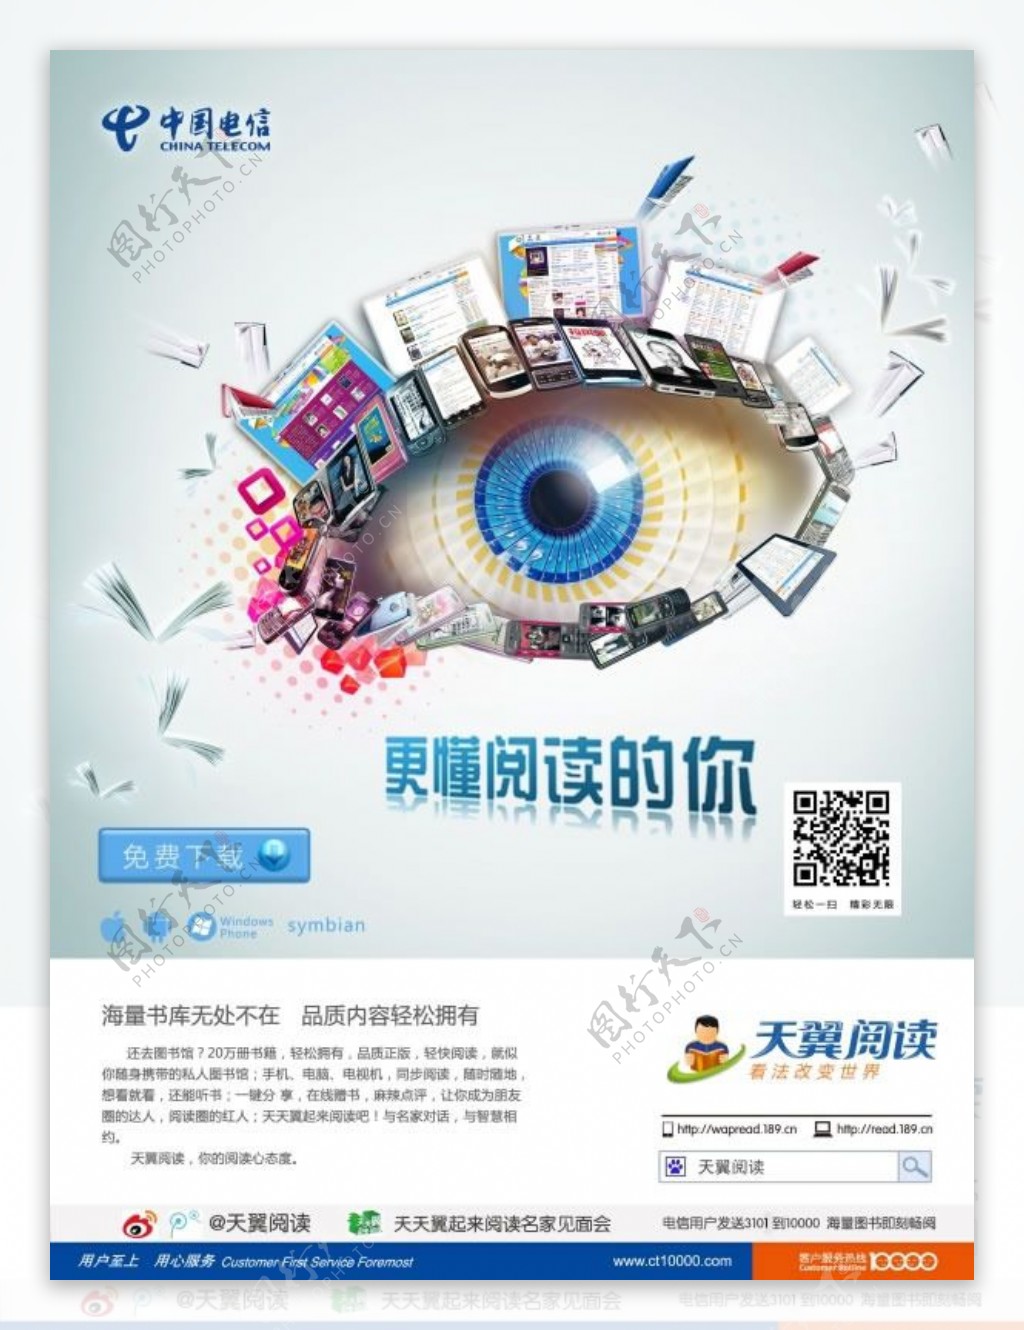 中国电信天翼阅读品牌宣传海报